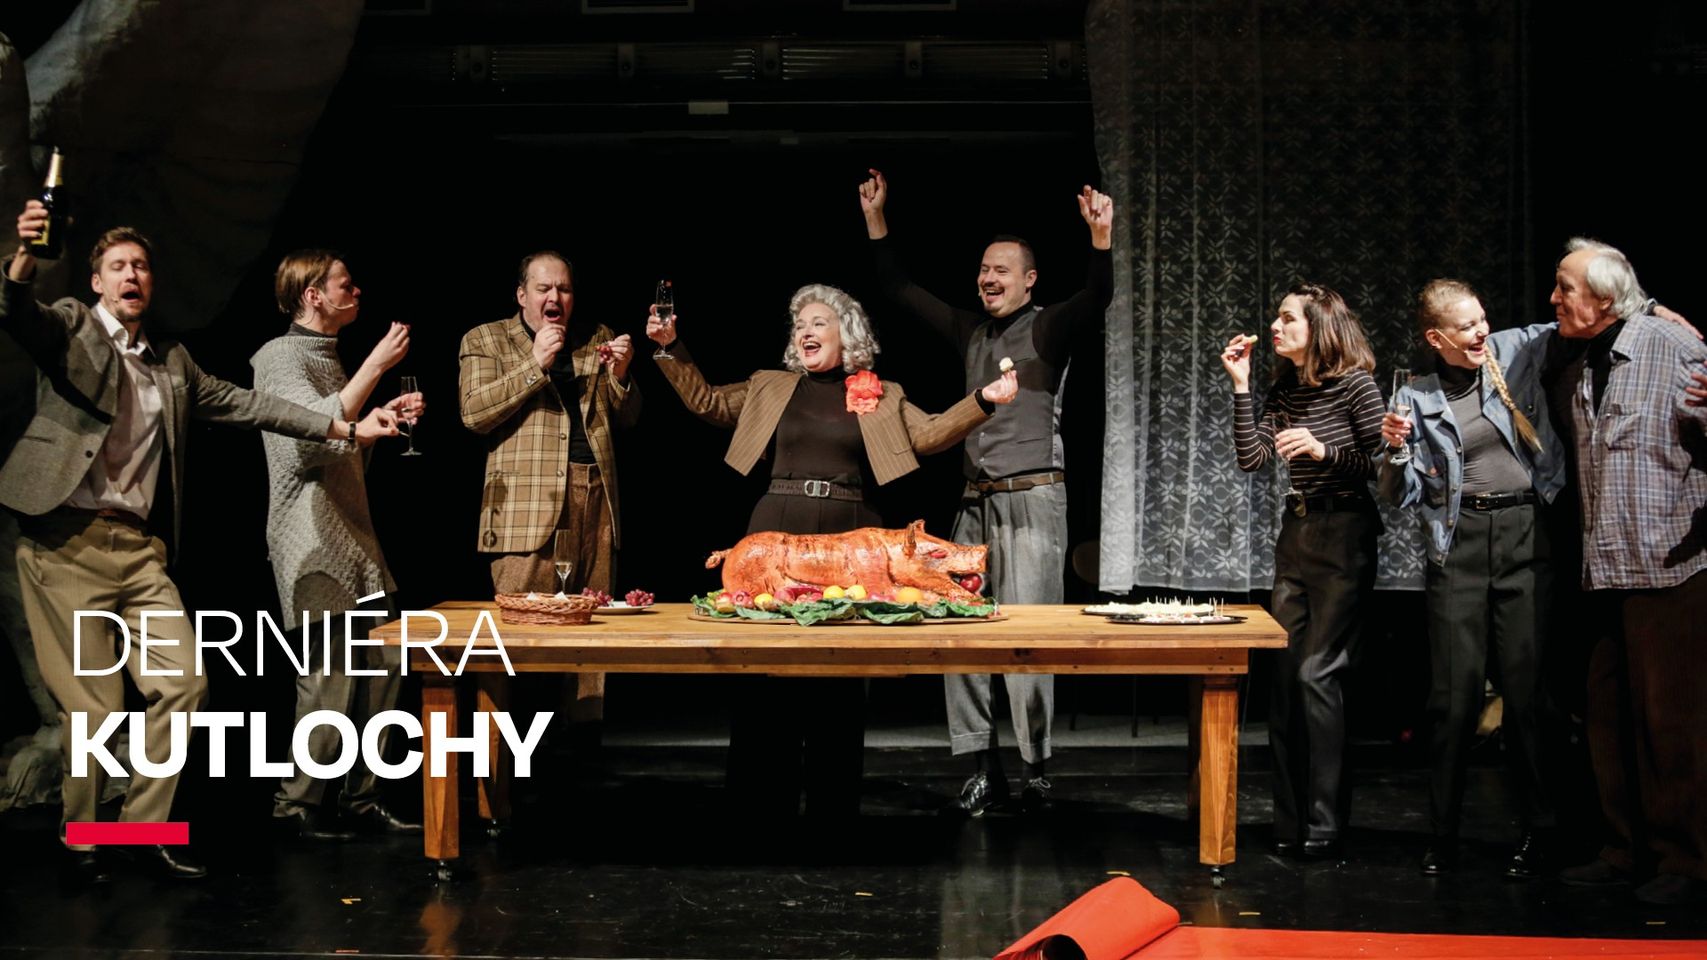 INSCENÁCIA KUTLOCHY / DERNIÉRA Divadlo Andreja Bagara v Nitre